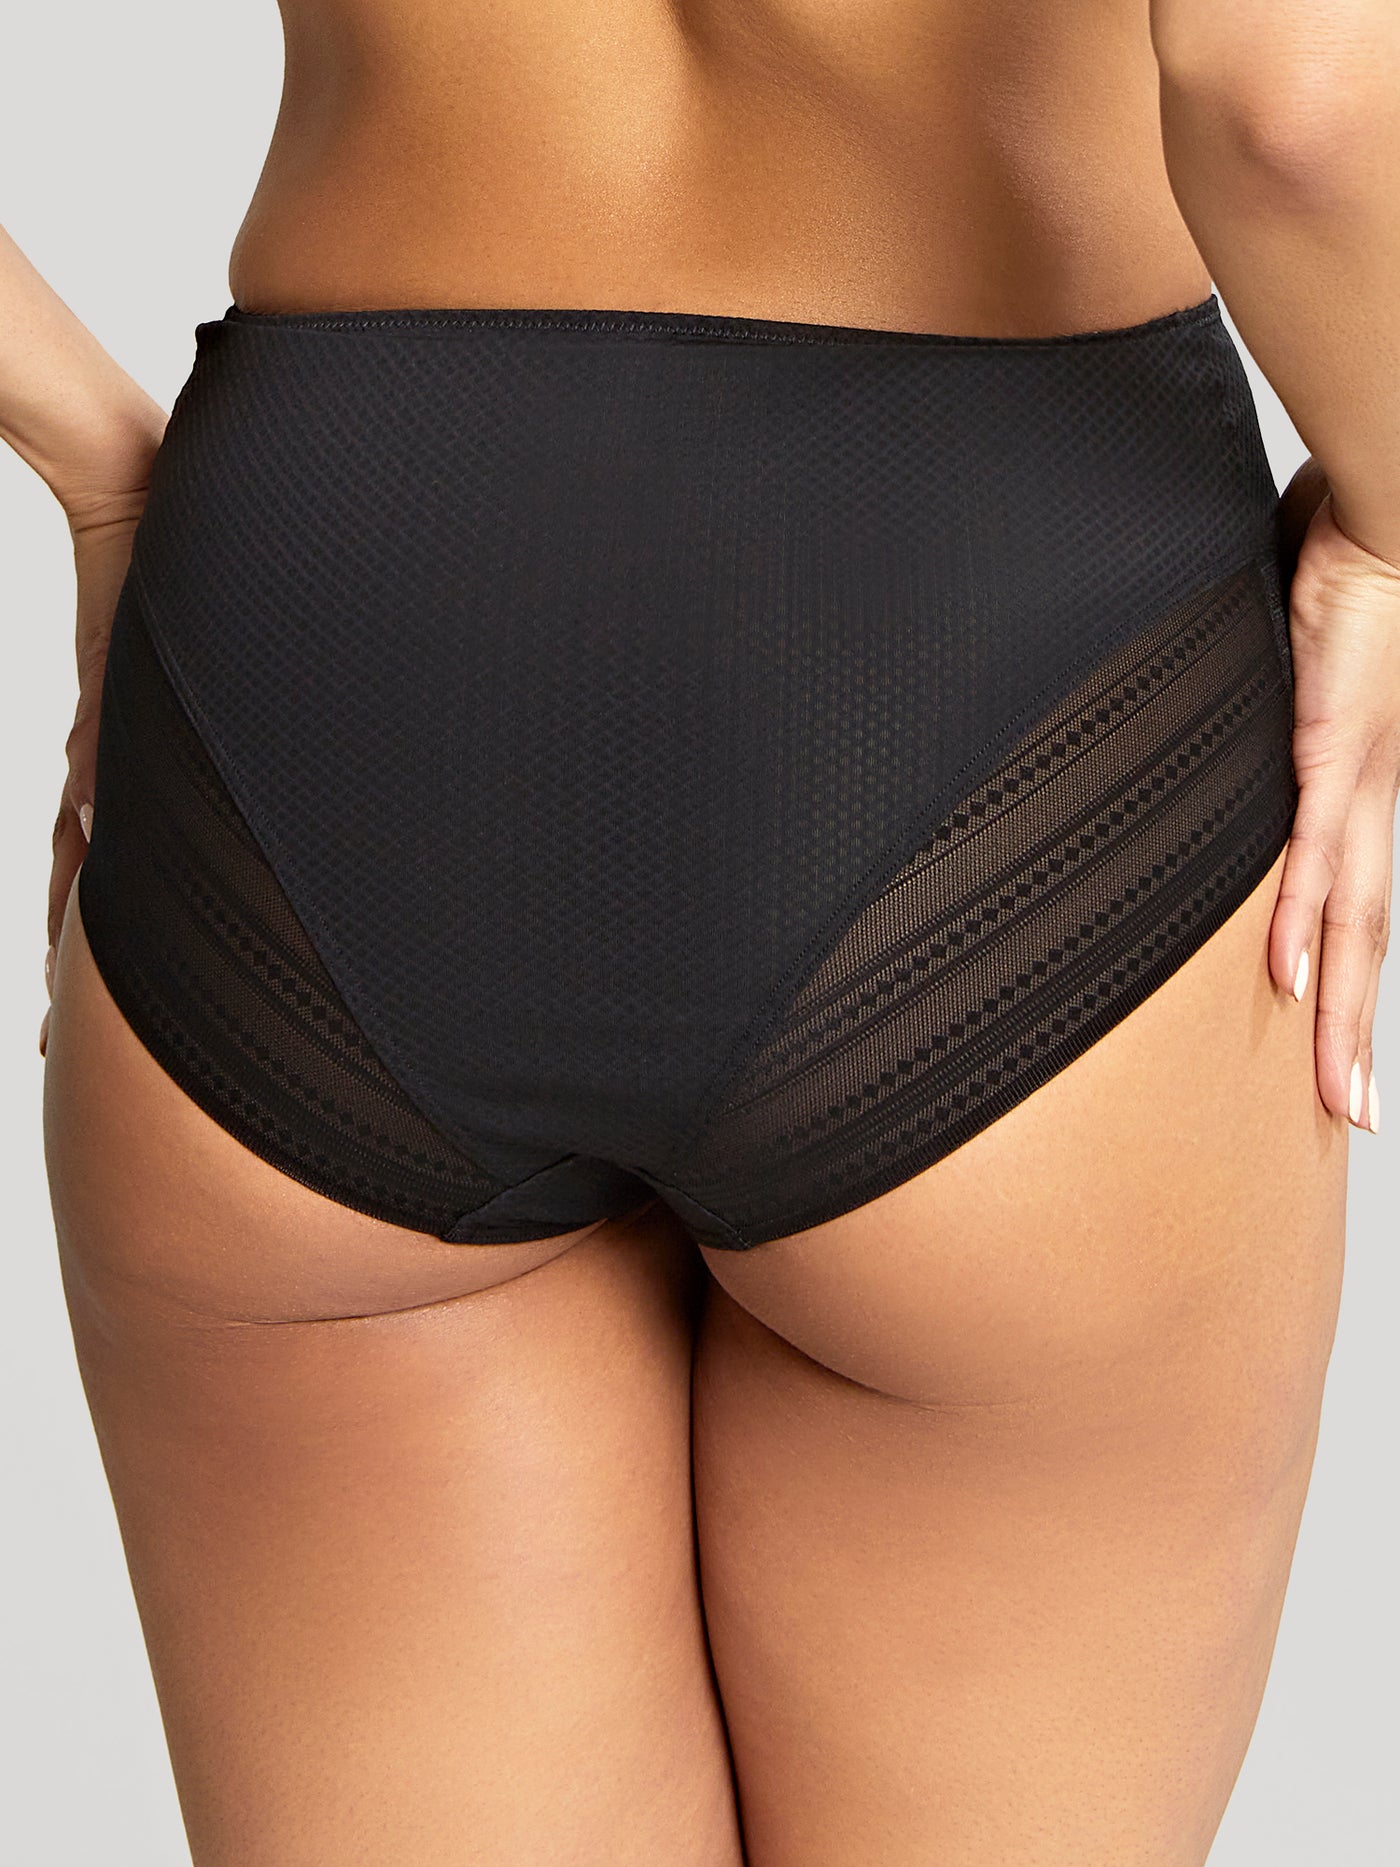 https://www.westlife-underwear.com/cdn/shop/products/10303_792_3_1400x.jpg?v=1667814153